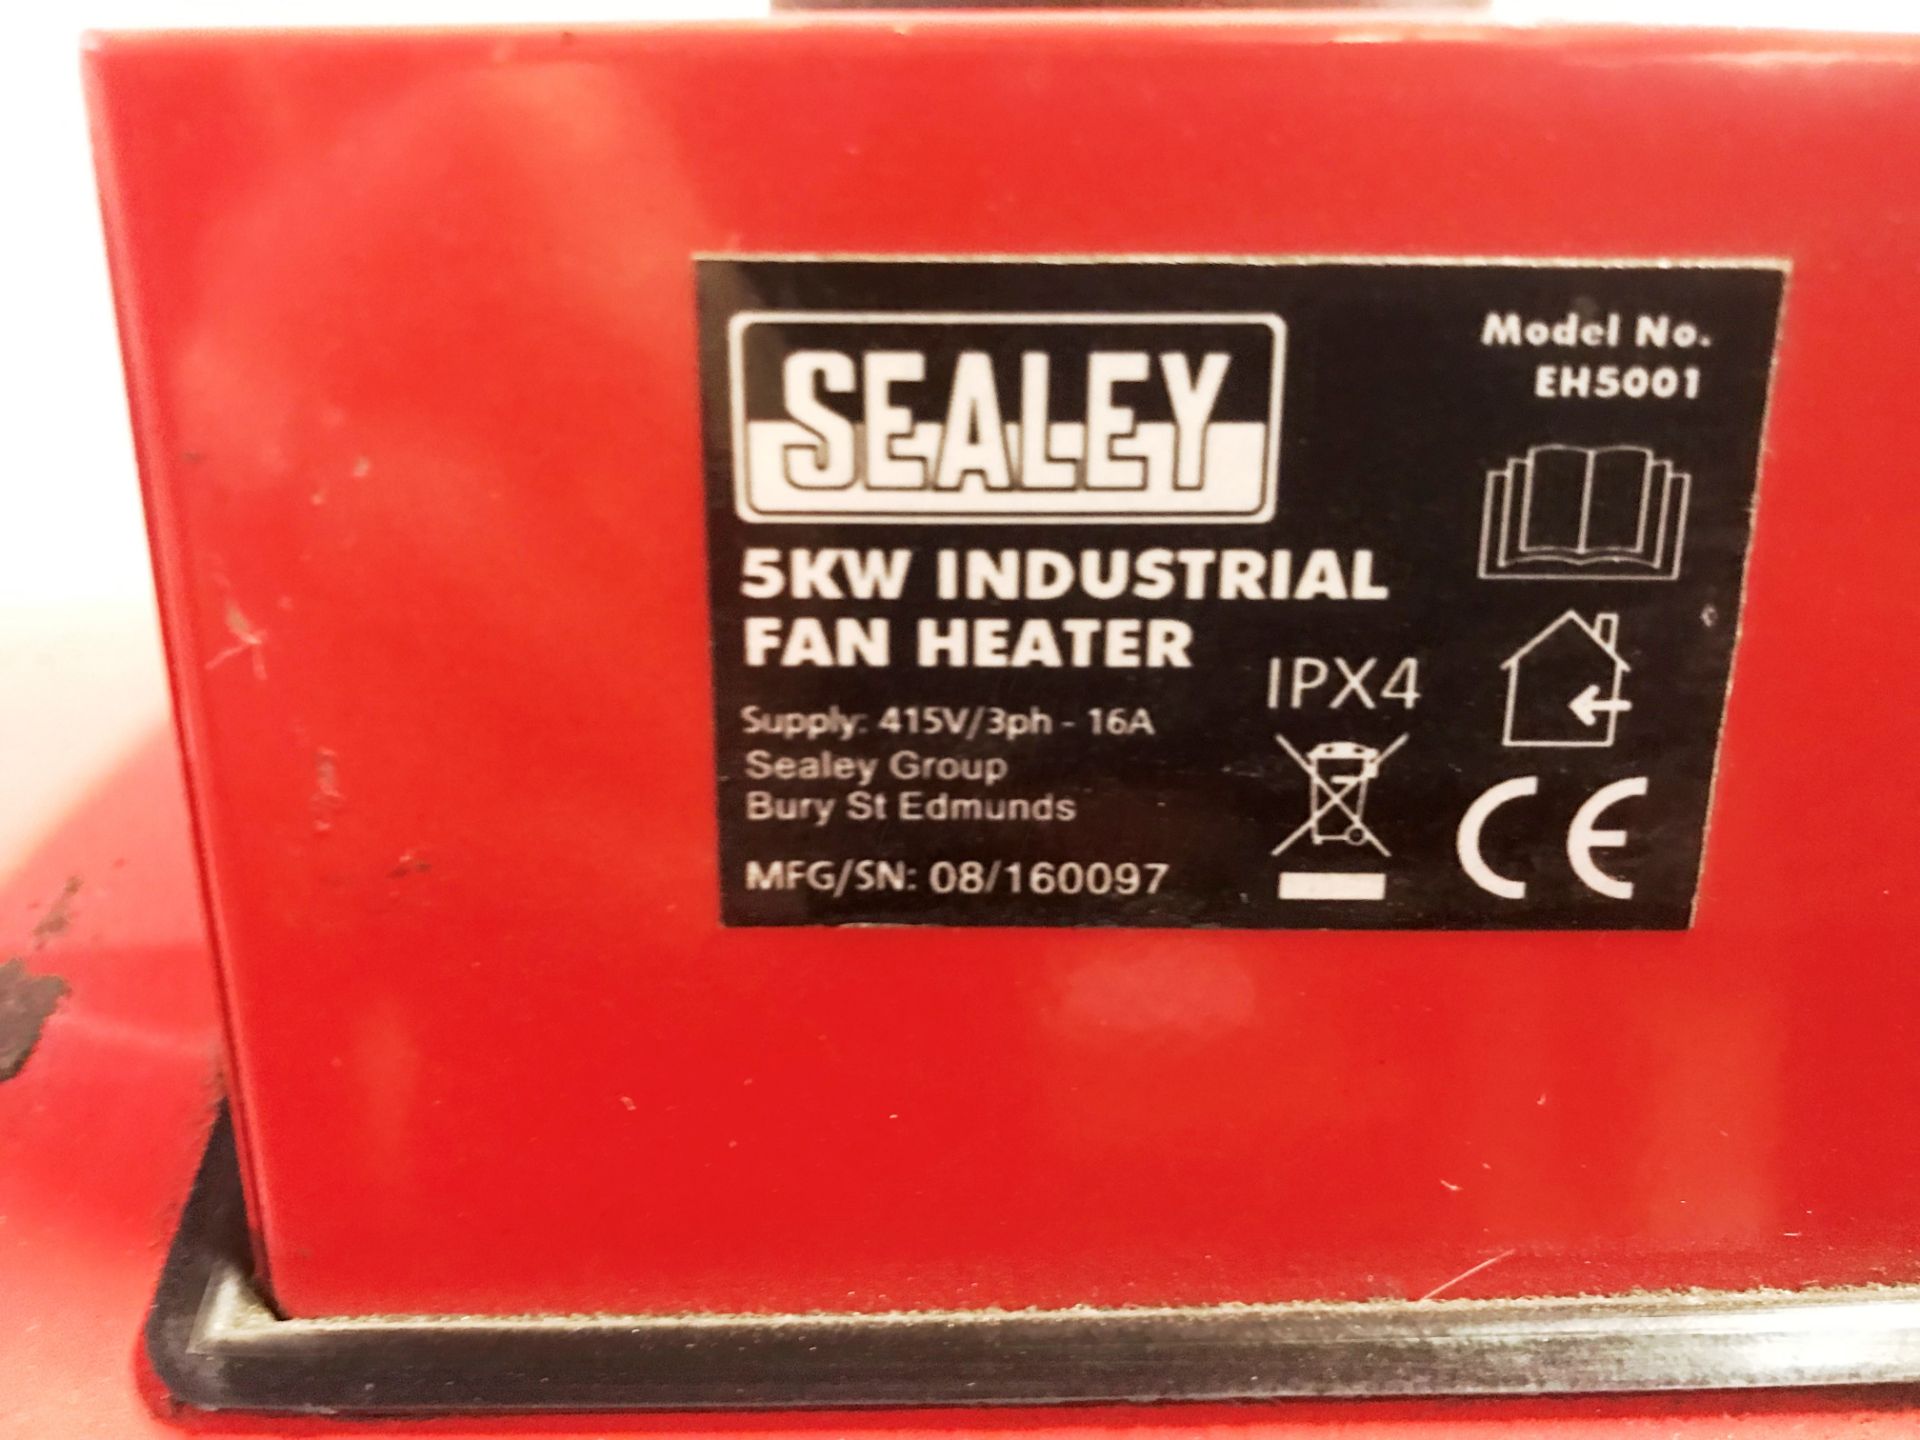 Sealey 5KW EH5001 industrial fan heater - Image 3 of 3